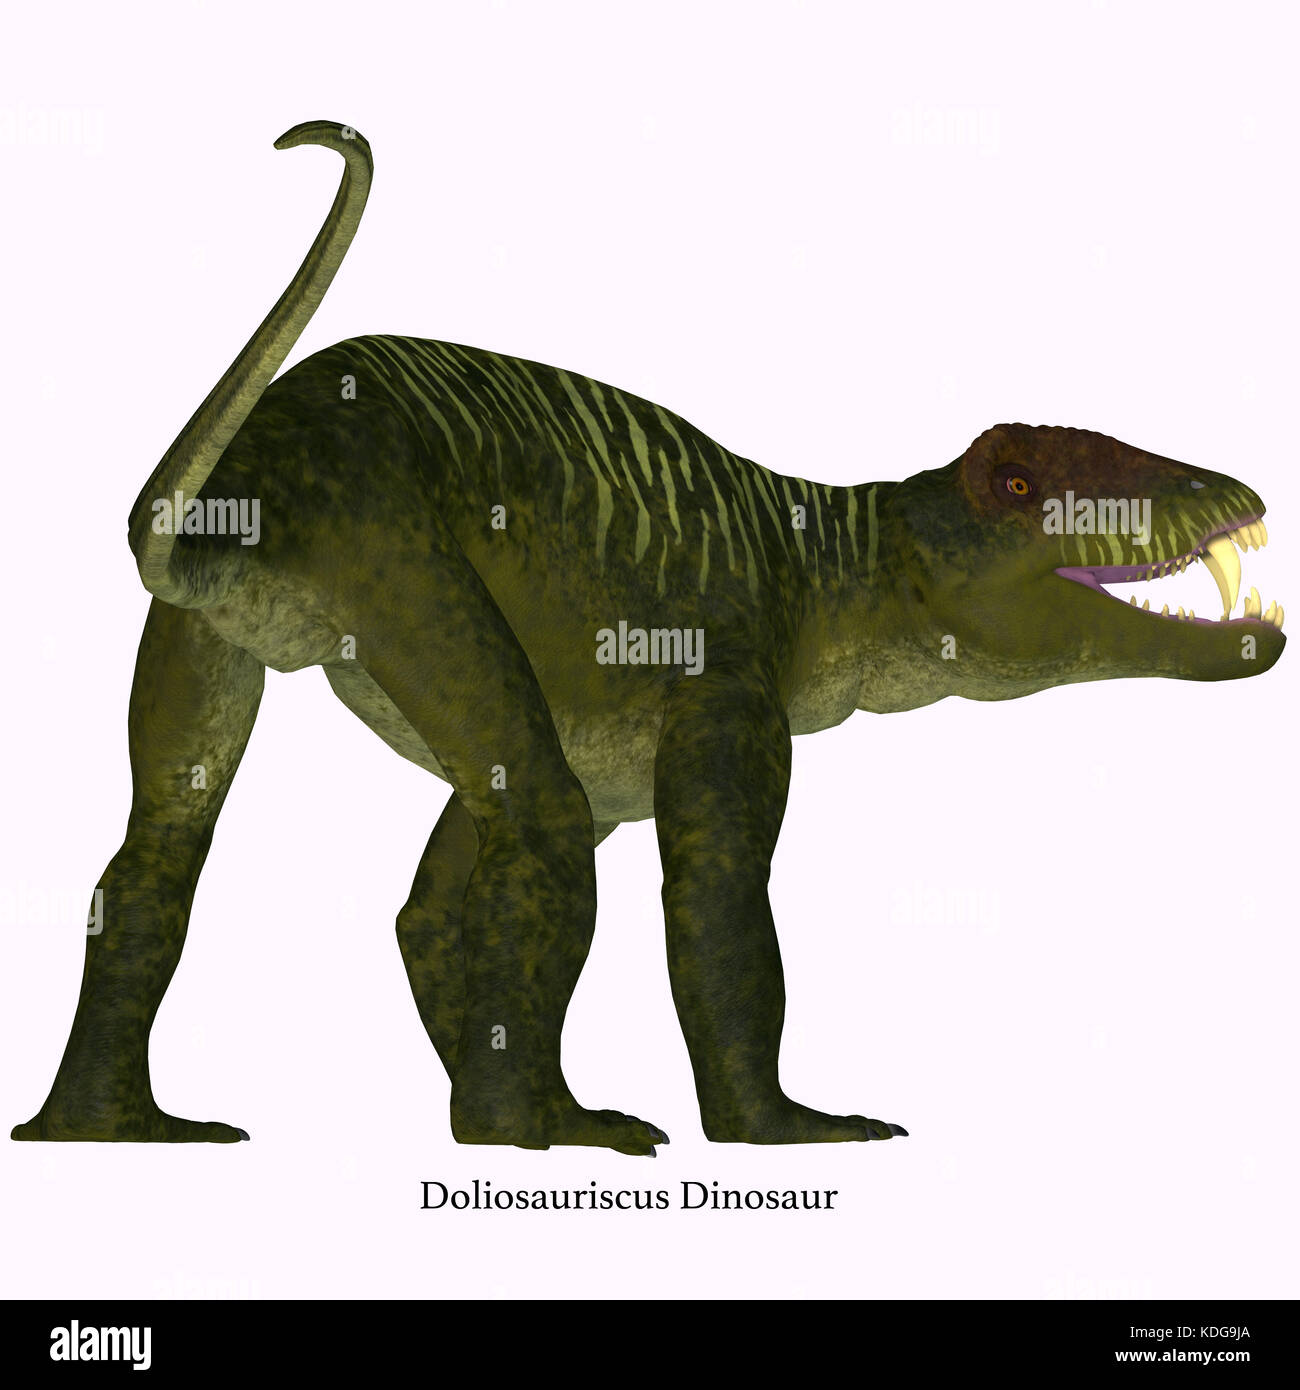 Doliosauriscus coda di dinosauro - Doliosauriscus è un genere estinto di therapsid dinosauro carnivoro che viveva in Russia nel periodo Permiano. Foto Stock